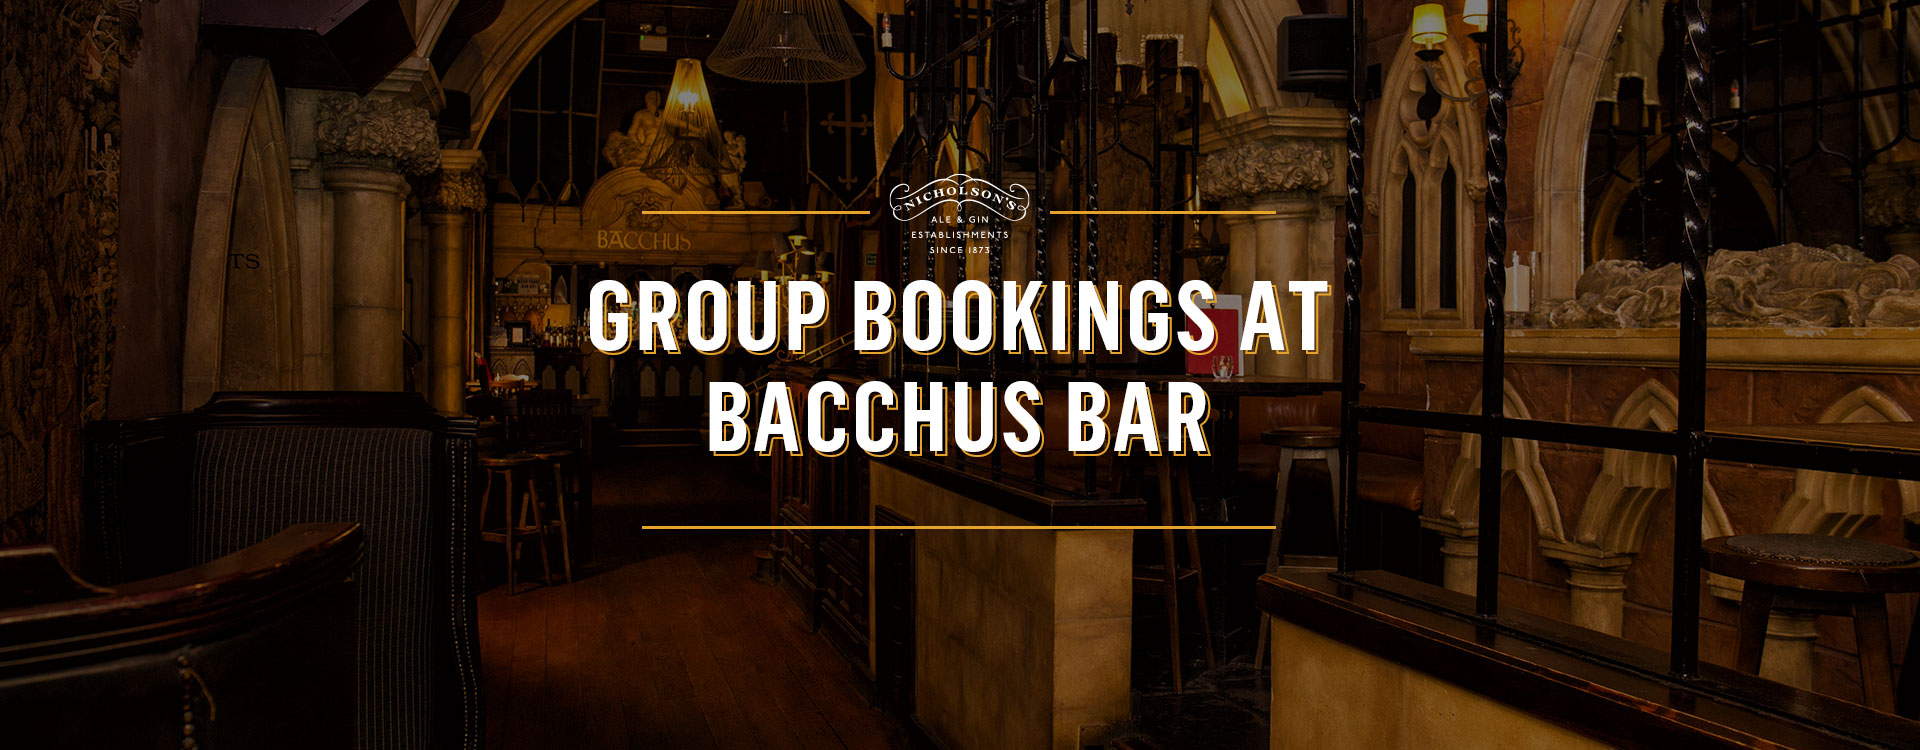 Group Bookings at Bacchus Bar